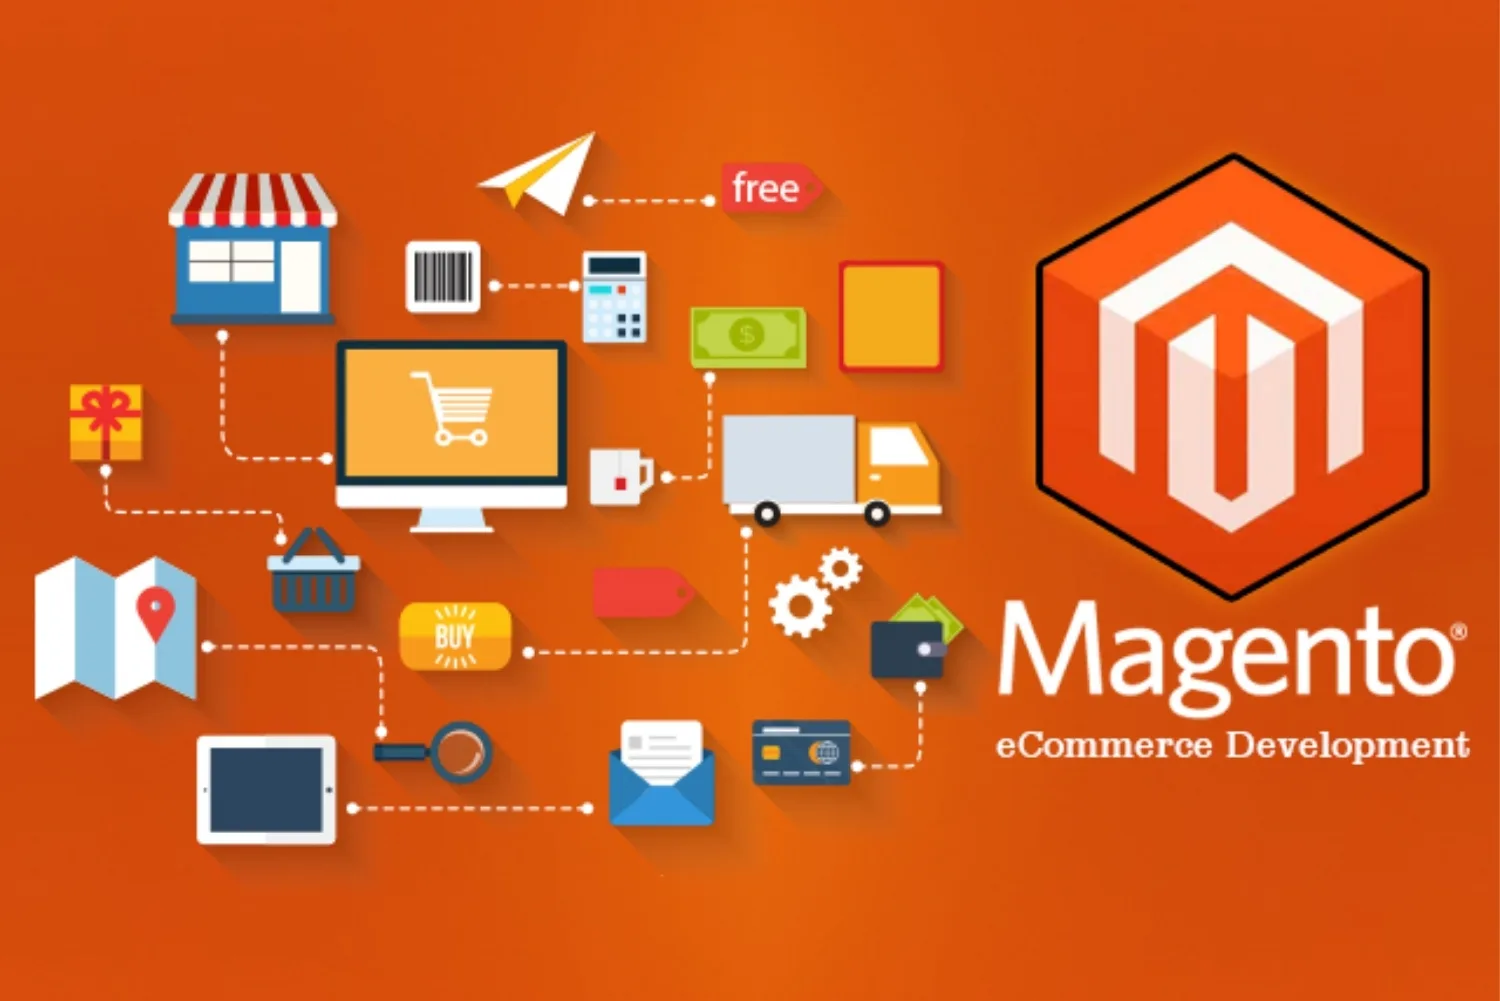 Magento giúp người dùng tạo trang website e-commerce